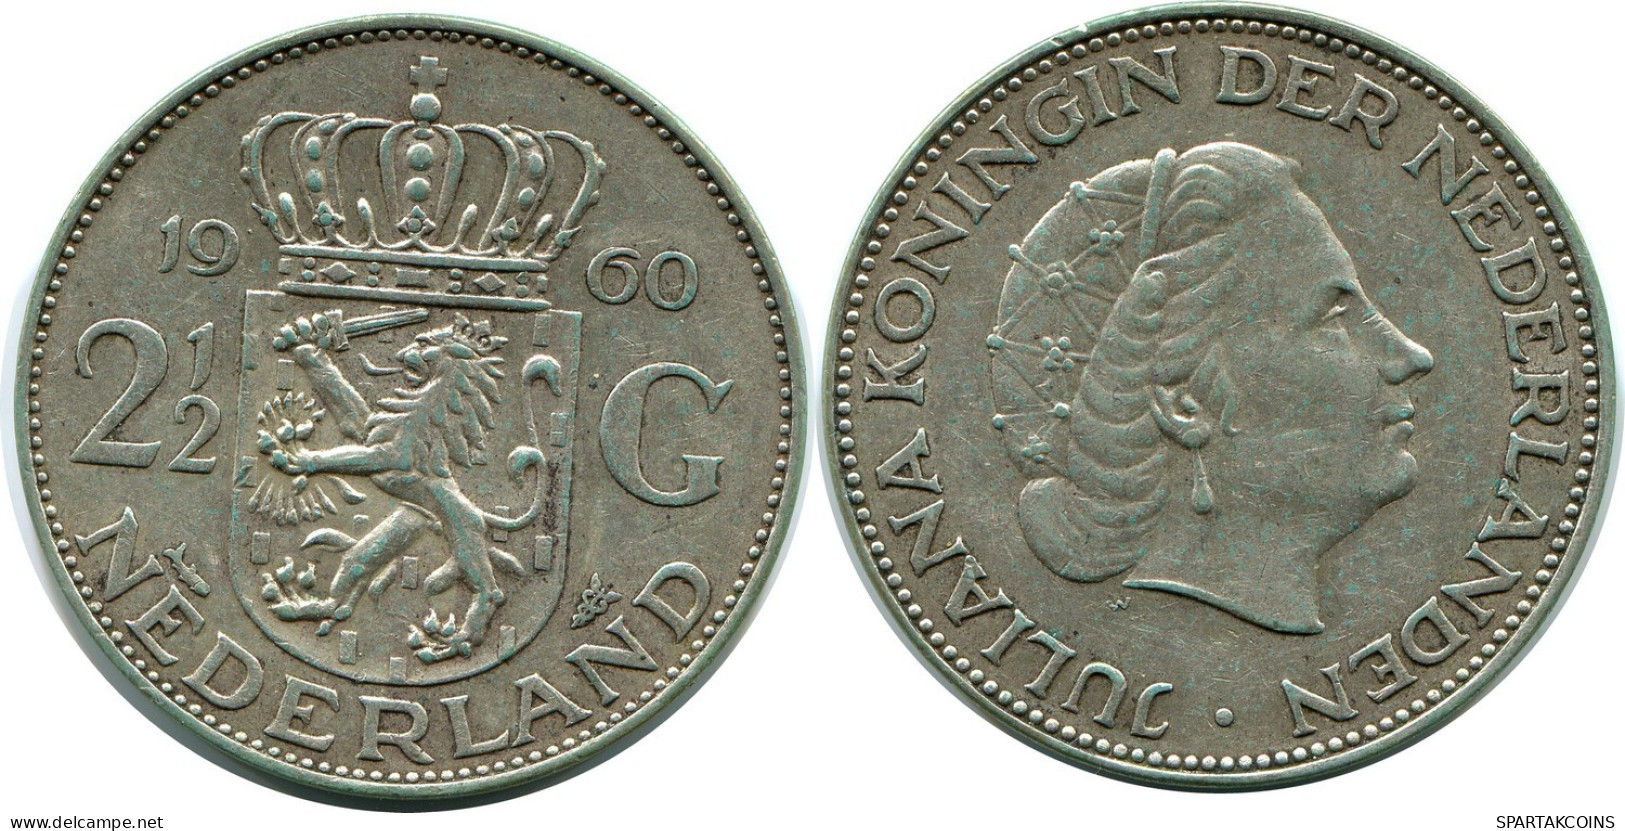 2 1/2 GULDEN 1960 NEERLANDÉS NETHERLANDS PLATA Moneda #AR952.E.A - 1948-1980: Juliana